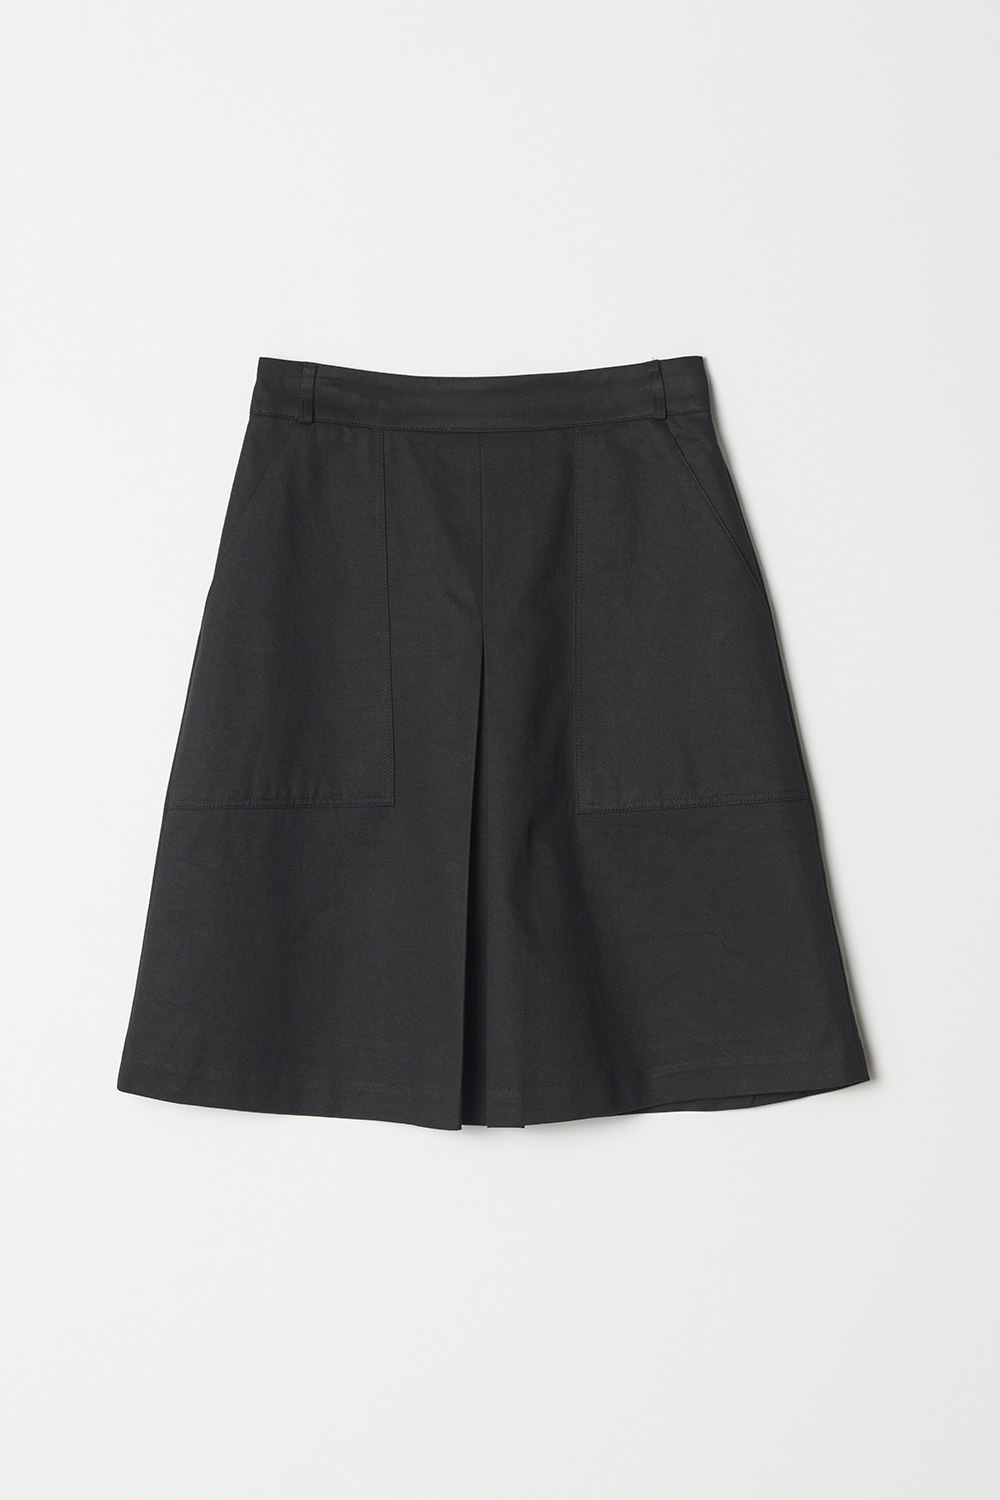 素敵でユニークな FW 22 Skirt_Black Midi Diana ミディアムスカート